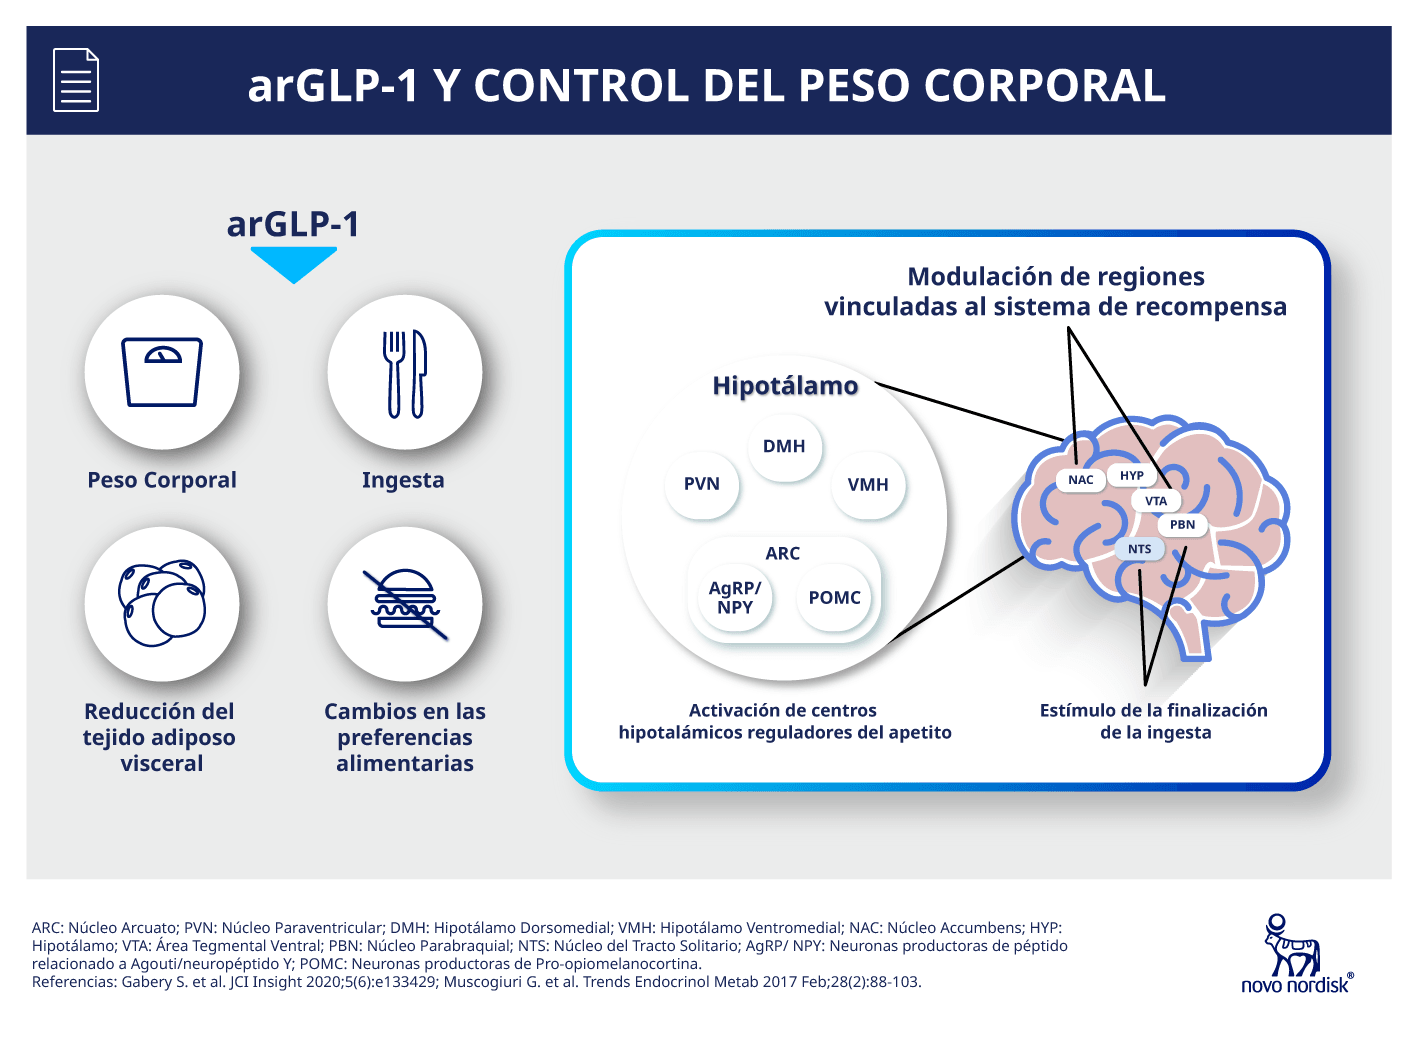 arGLP-1 y control del peso corporal.